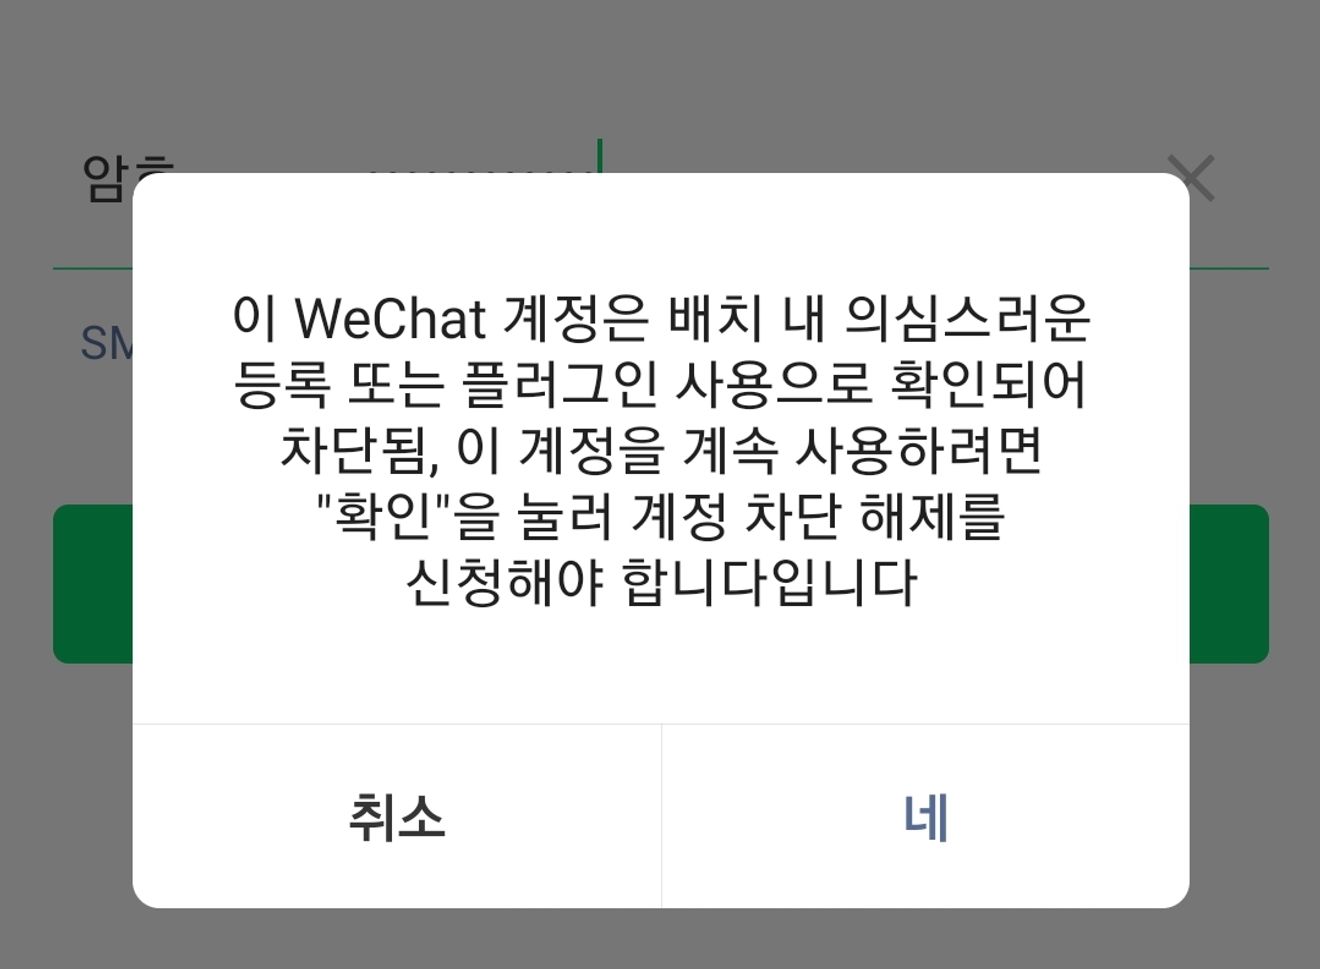 Wechat 차단 확인